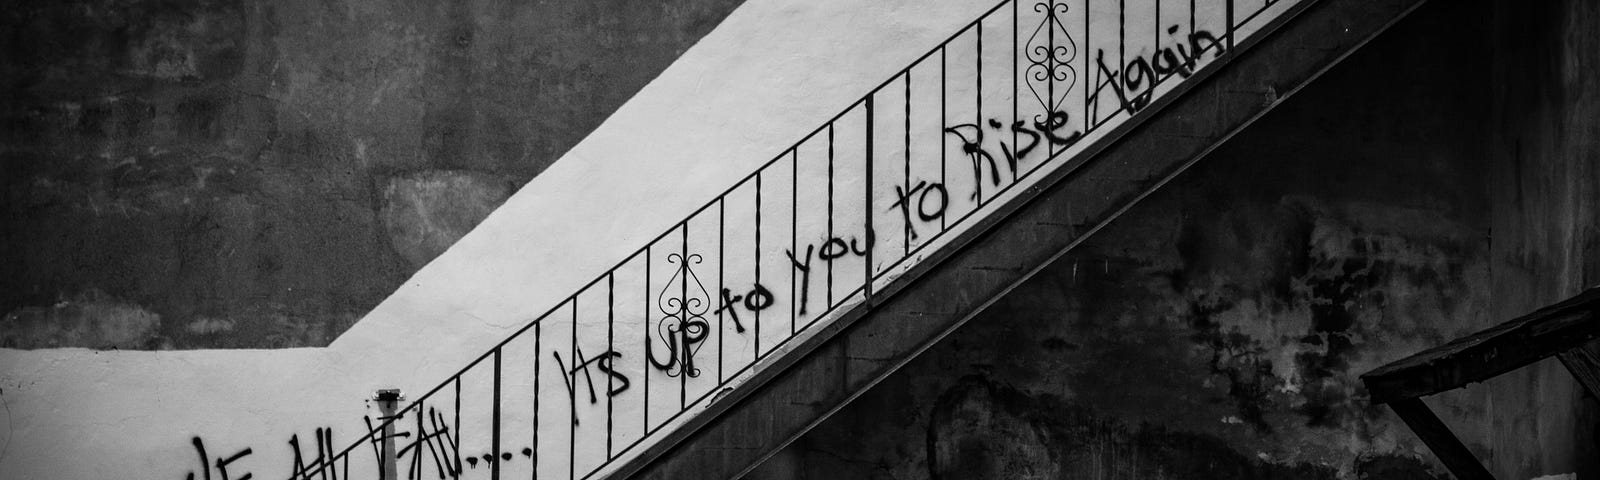 It is up to you rise again duvar yazısının önünde bir merdiven